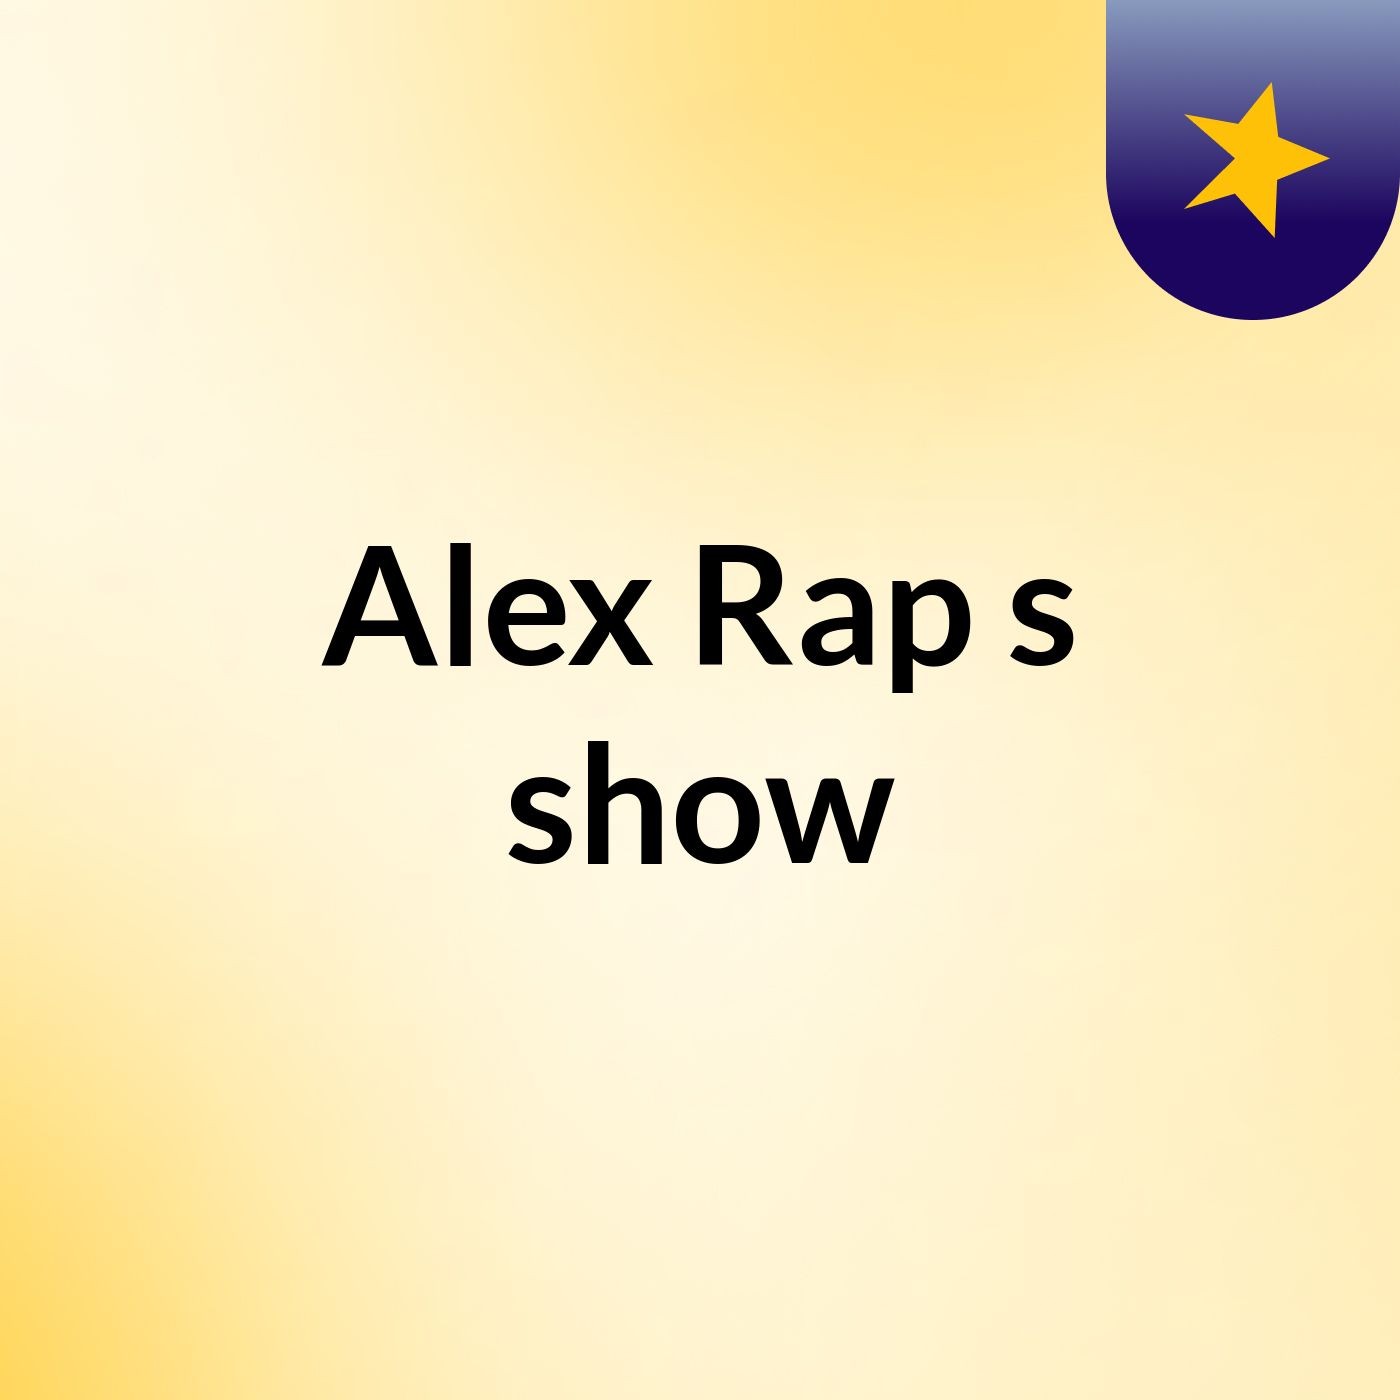 Alex Rap s show